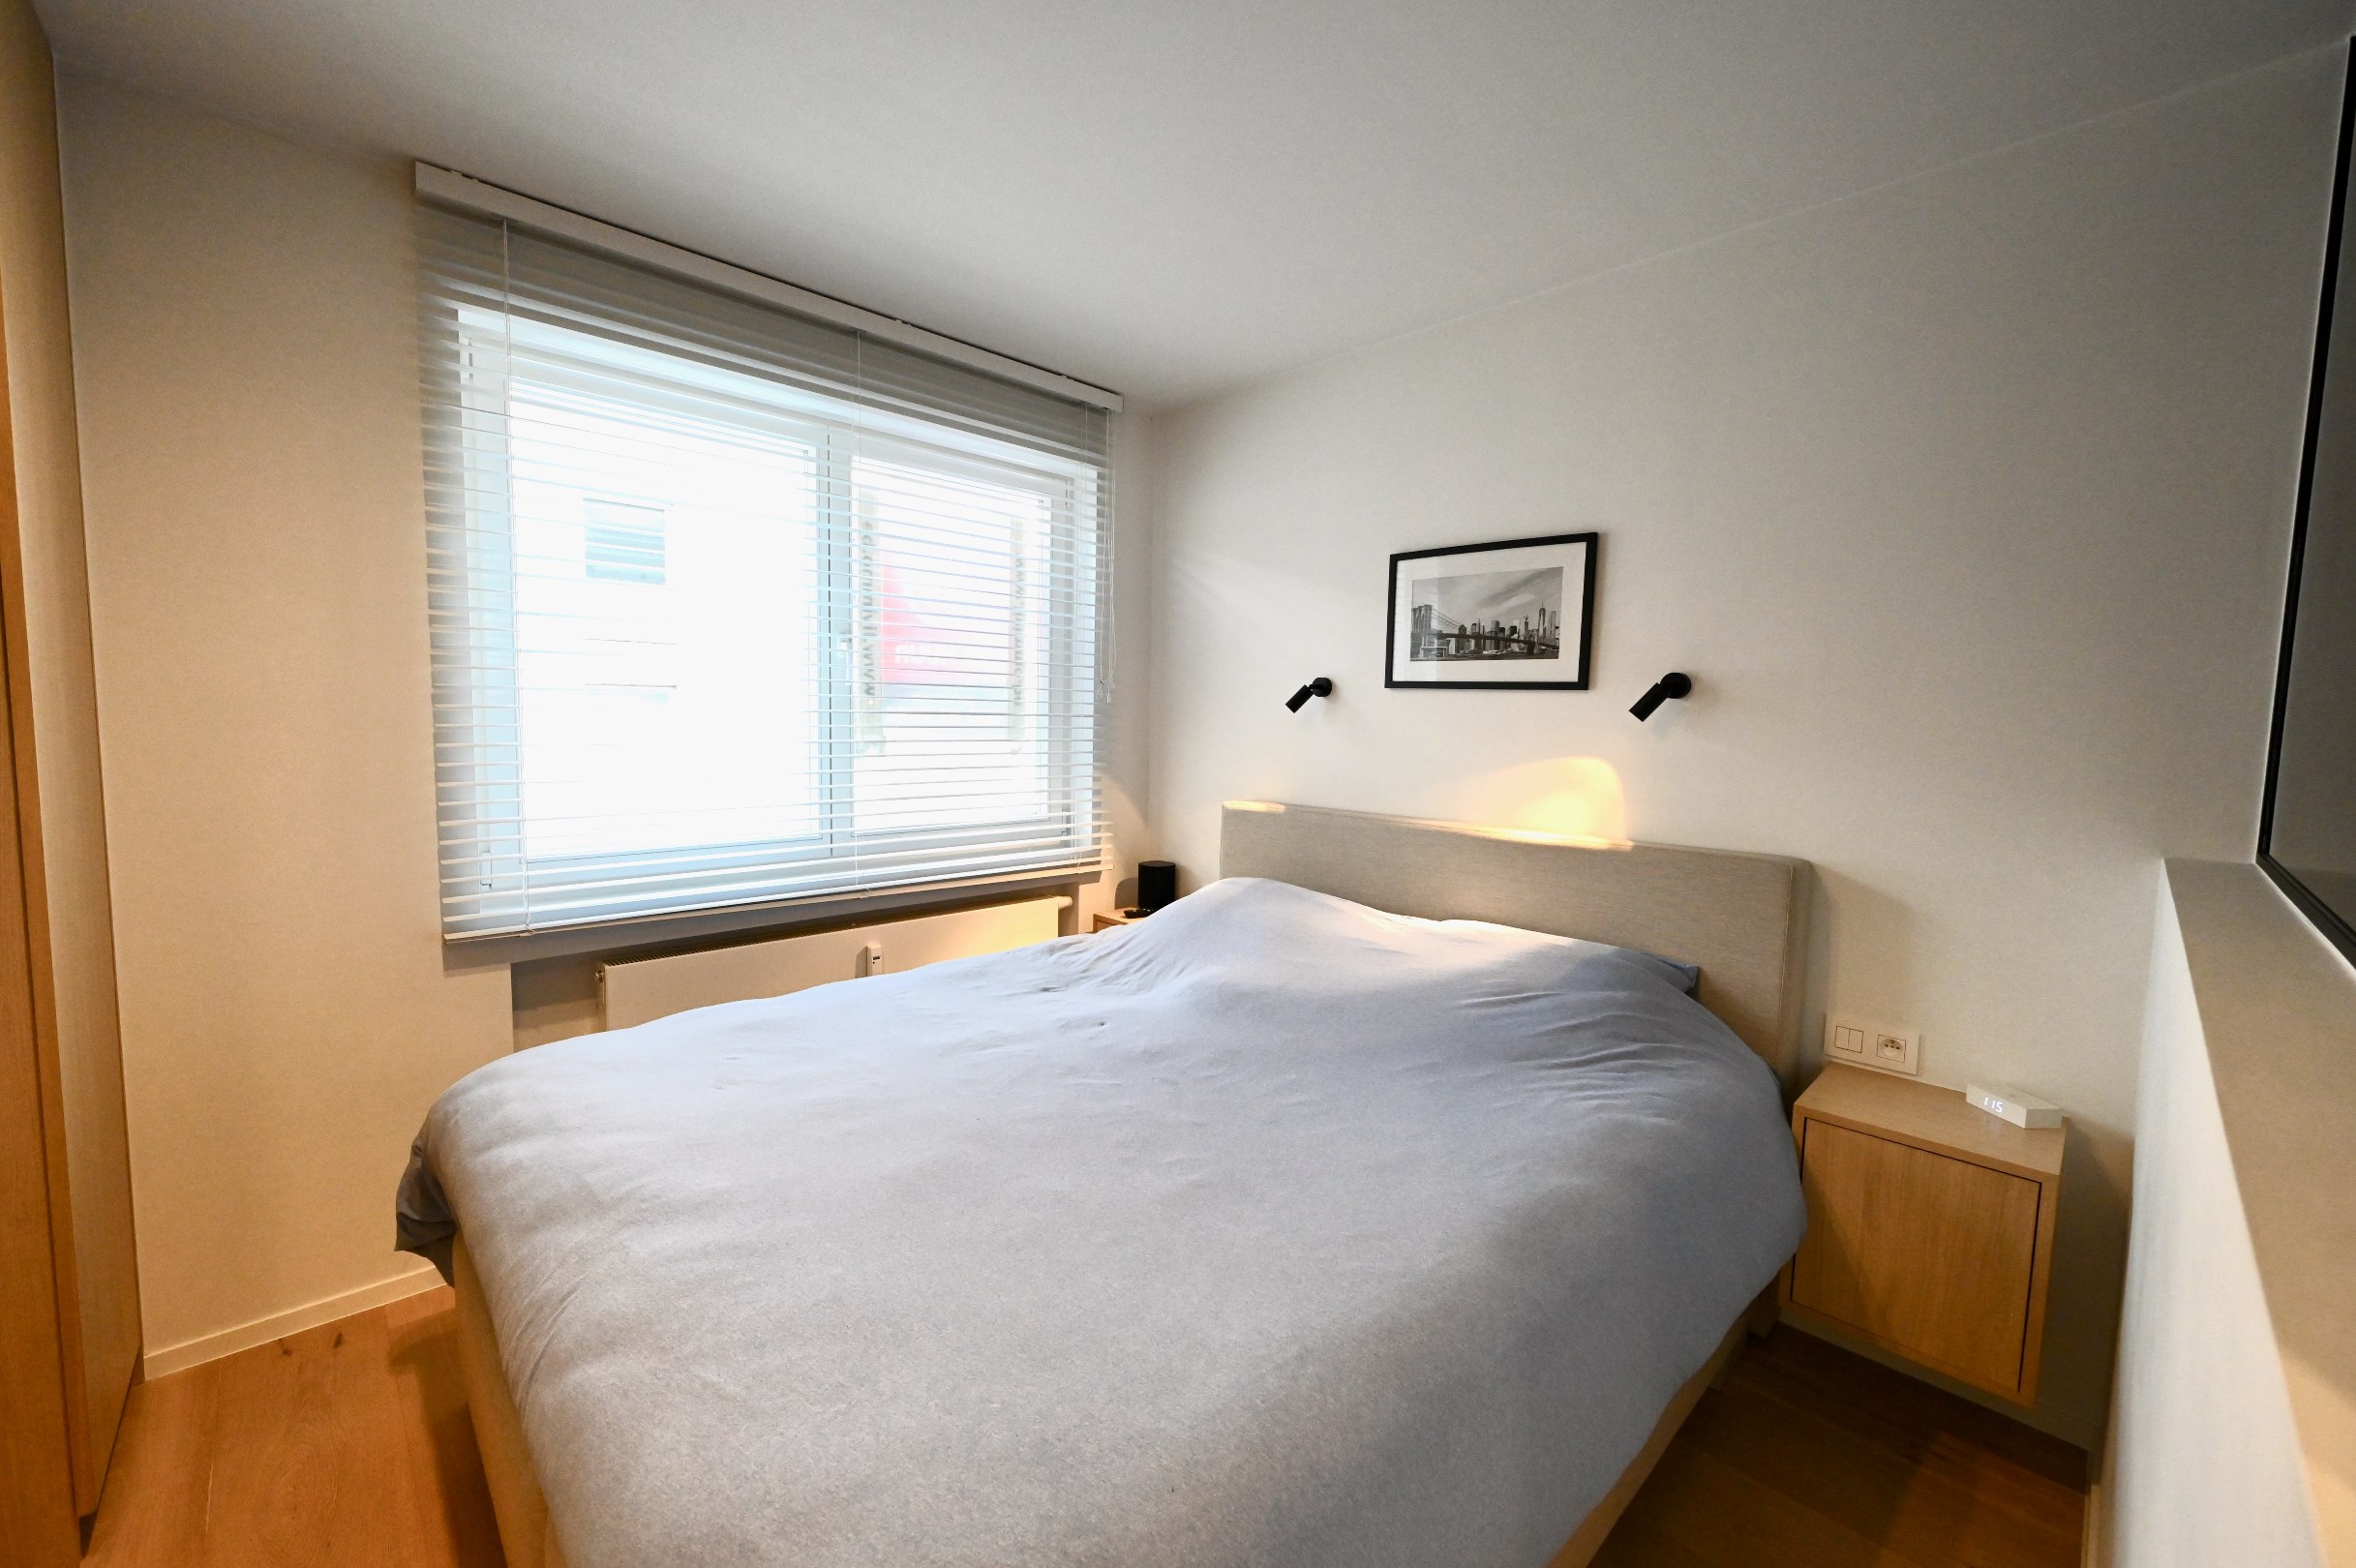 GEMEUBELD  - Modern gerenoveerd 1 slaapkamer appartement gelegen in de centrum van Knokke. 